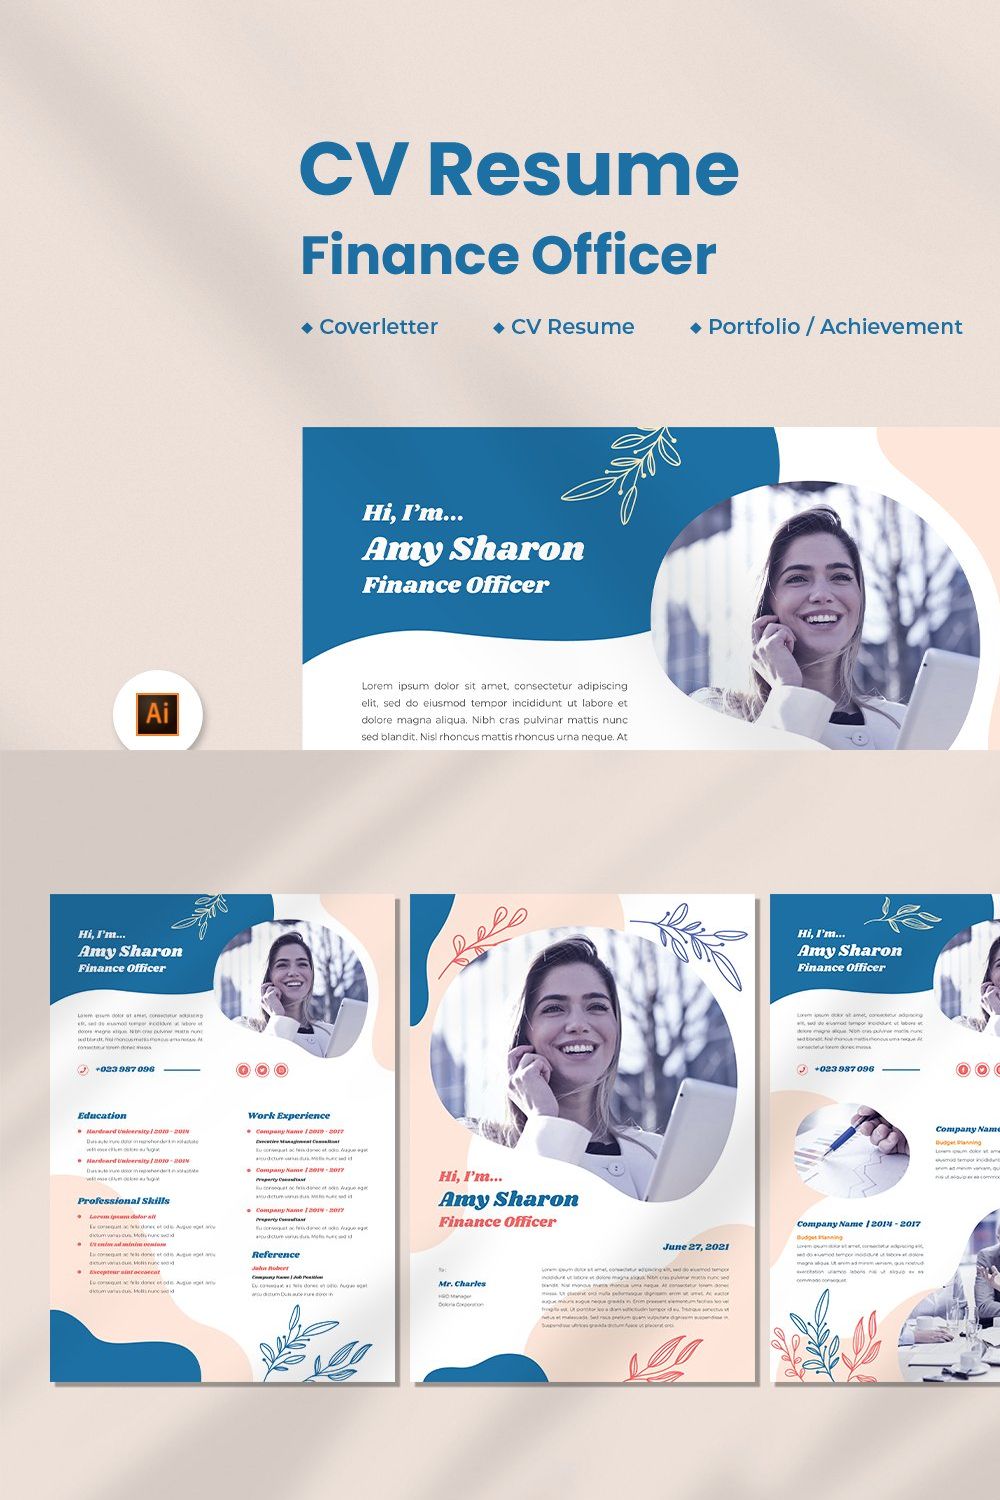 Finance Officer CV Resume pinterest preview image.